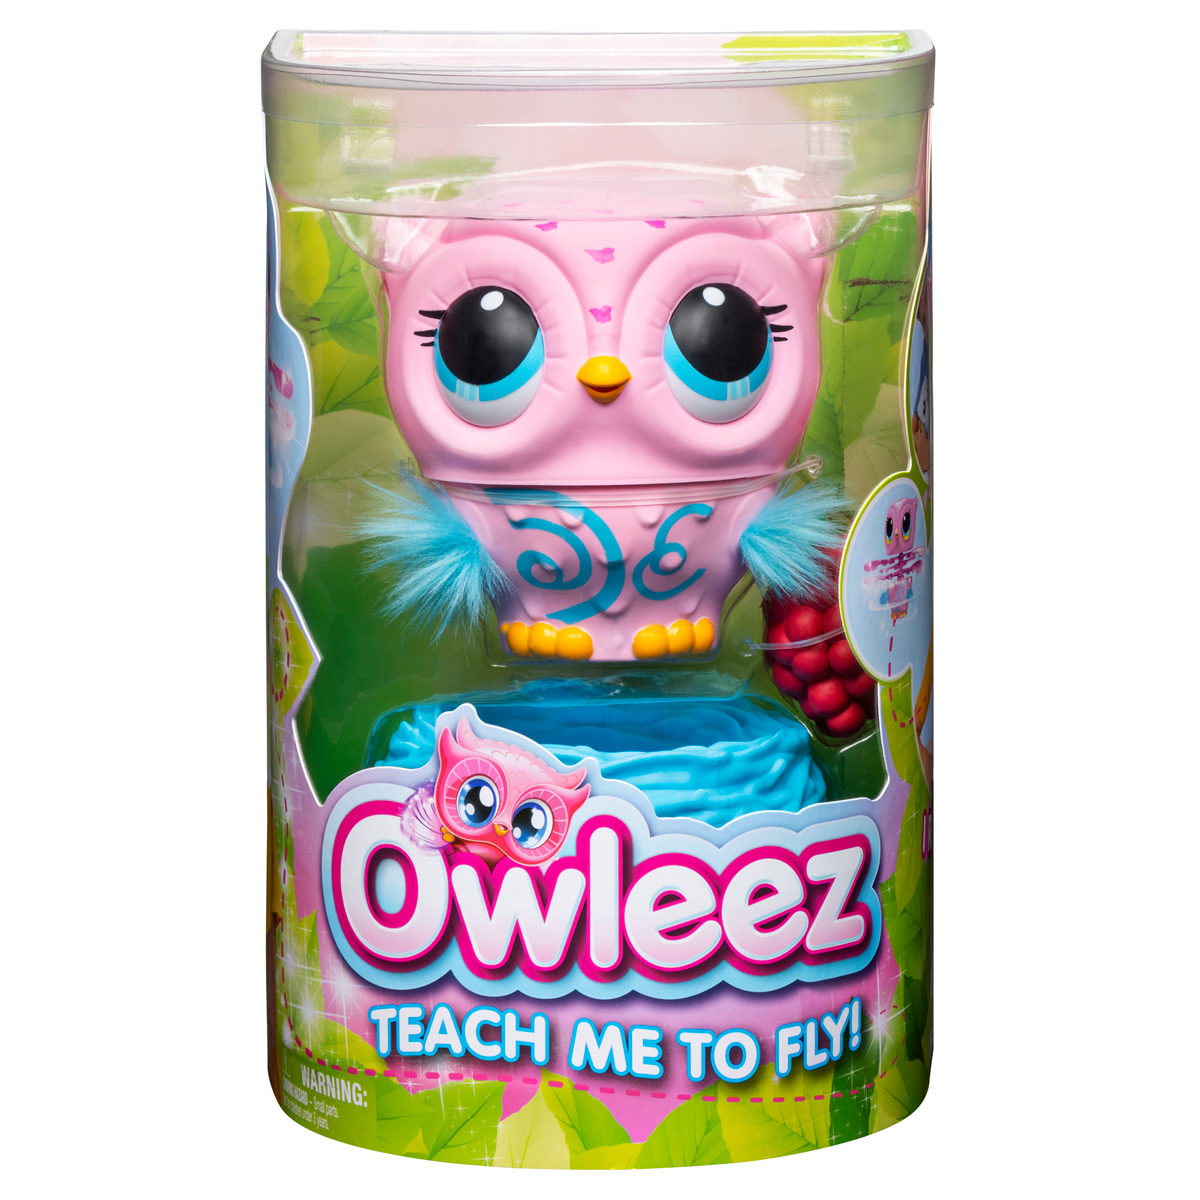 Owleez Flying Baby Owl Interactive Toy - Pink - Plush